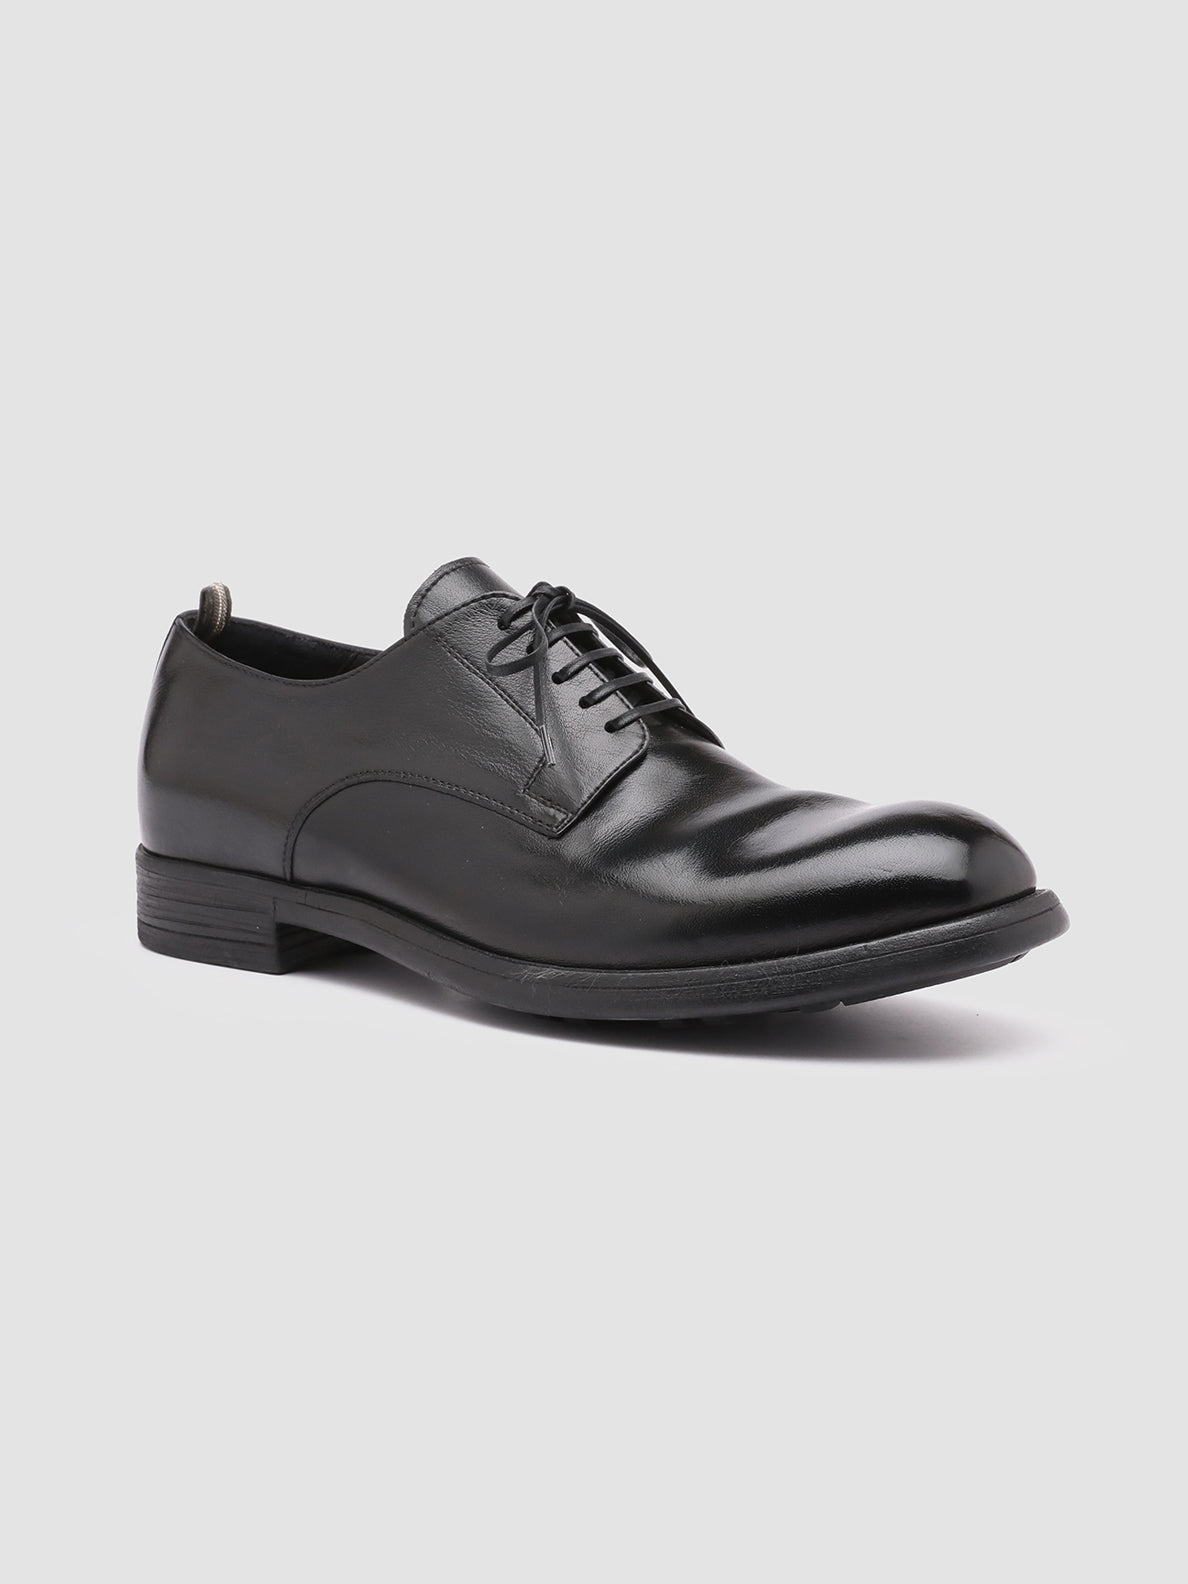 Men's Black Shoes CHRONICLE 001 – Officine Creative EU